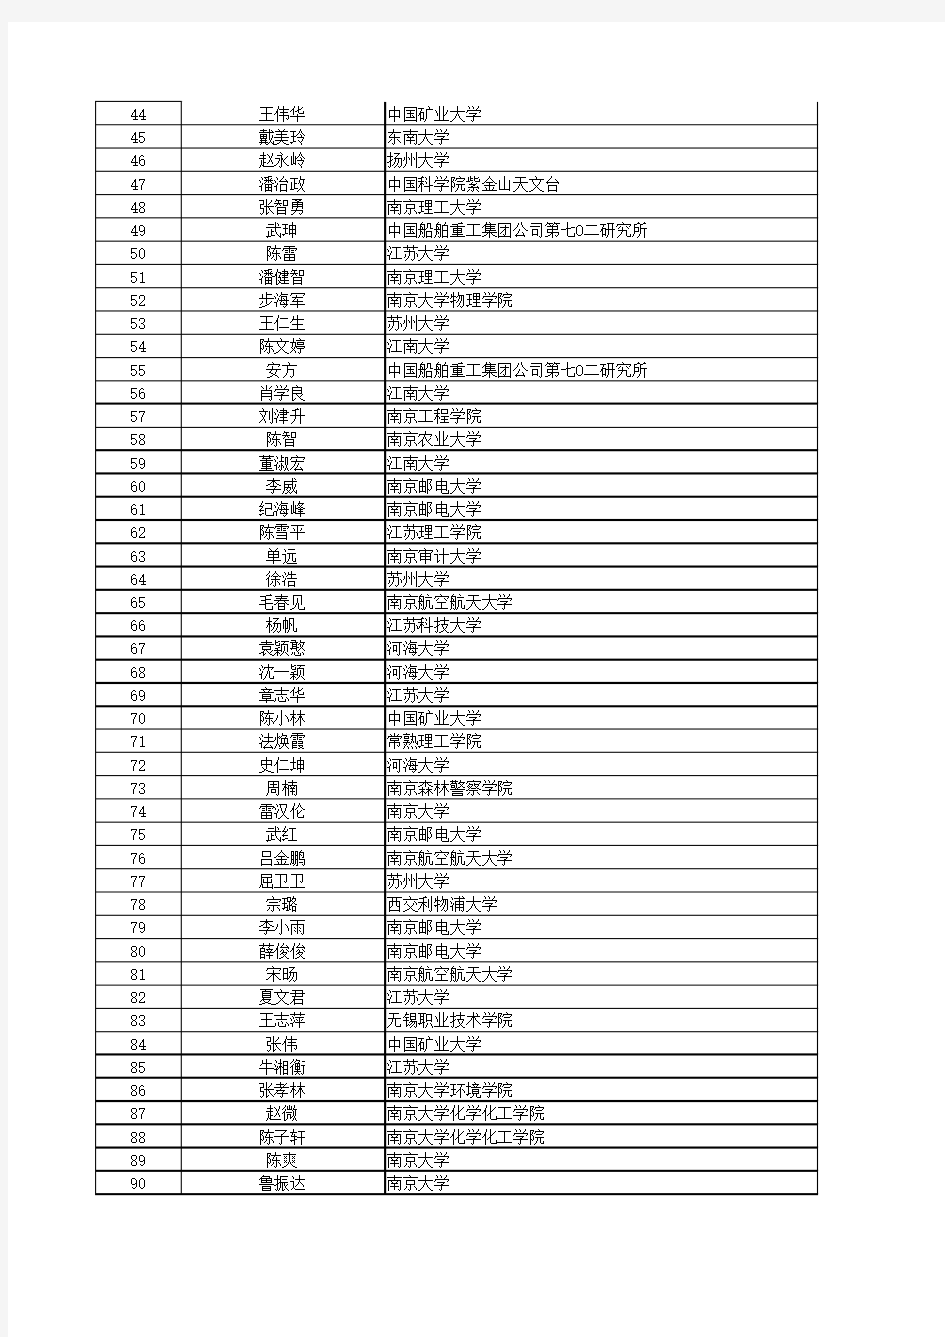 2016年江苏省自然科学基金青年基金获得者名单